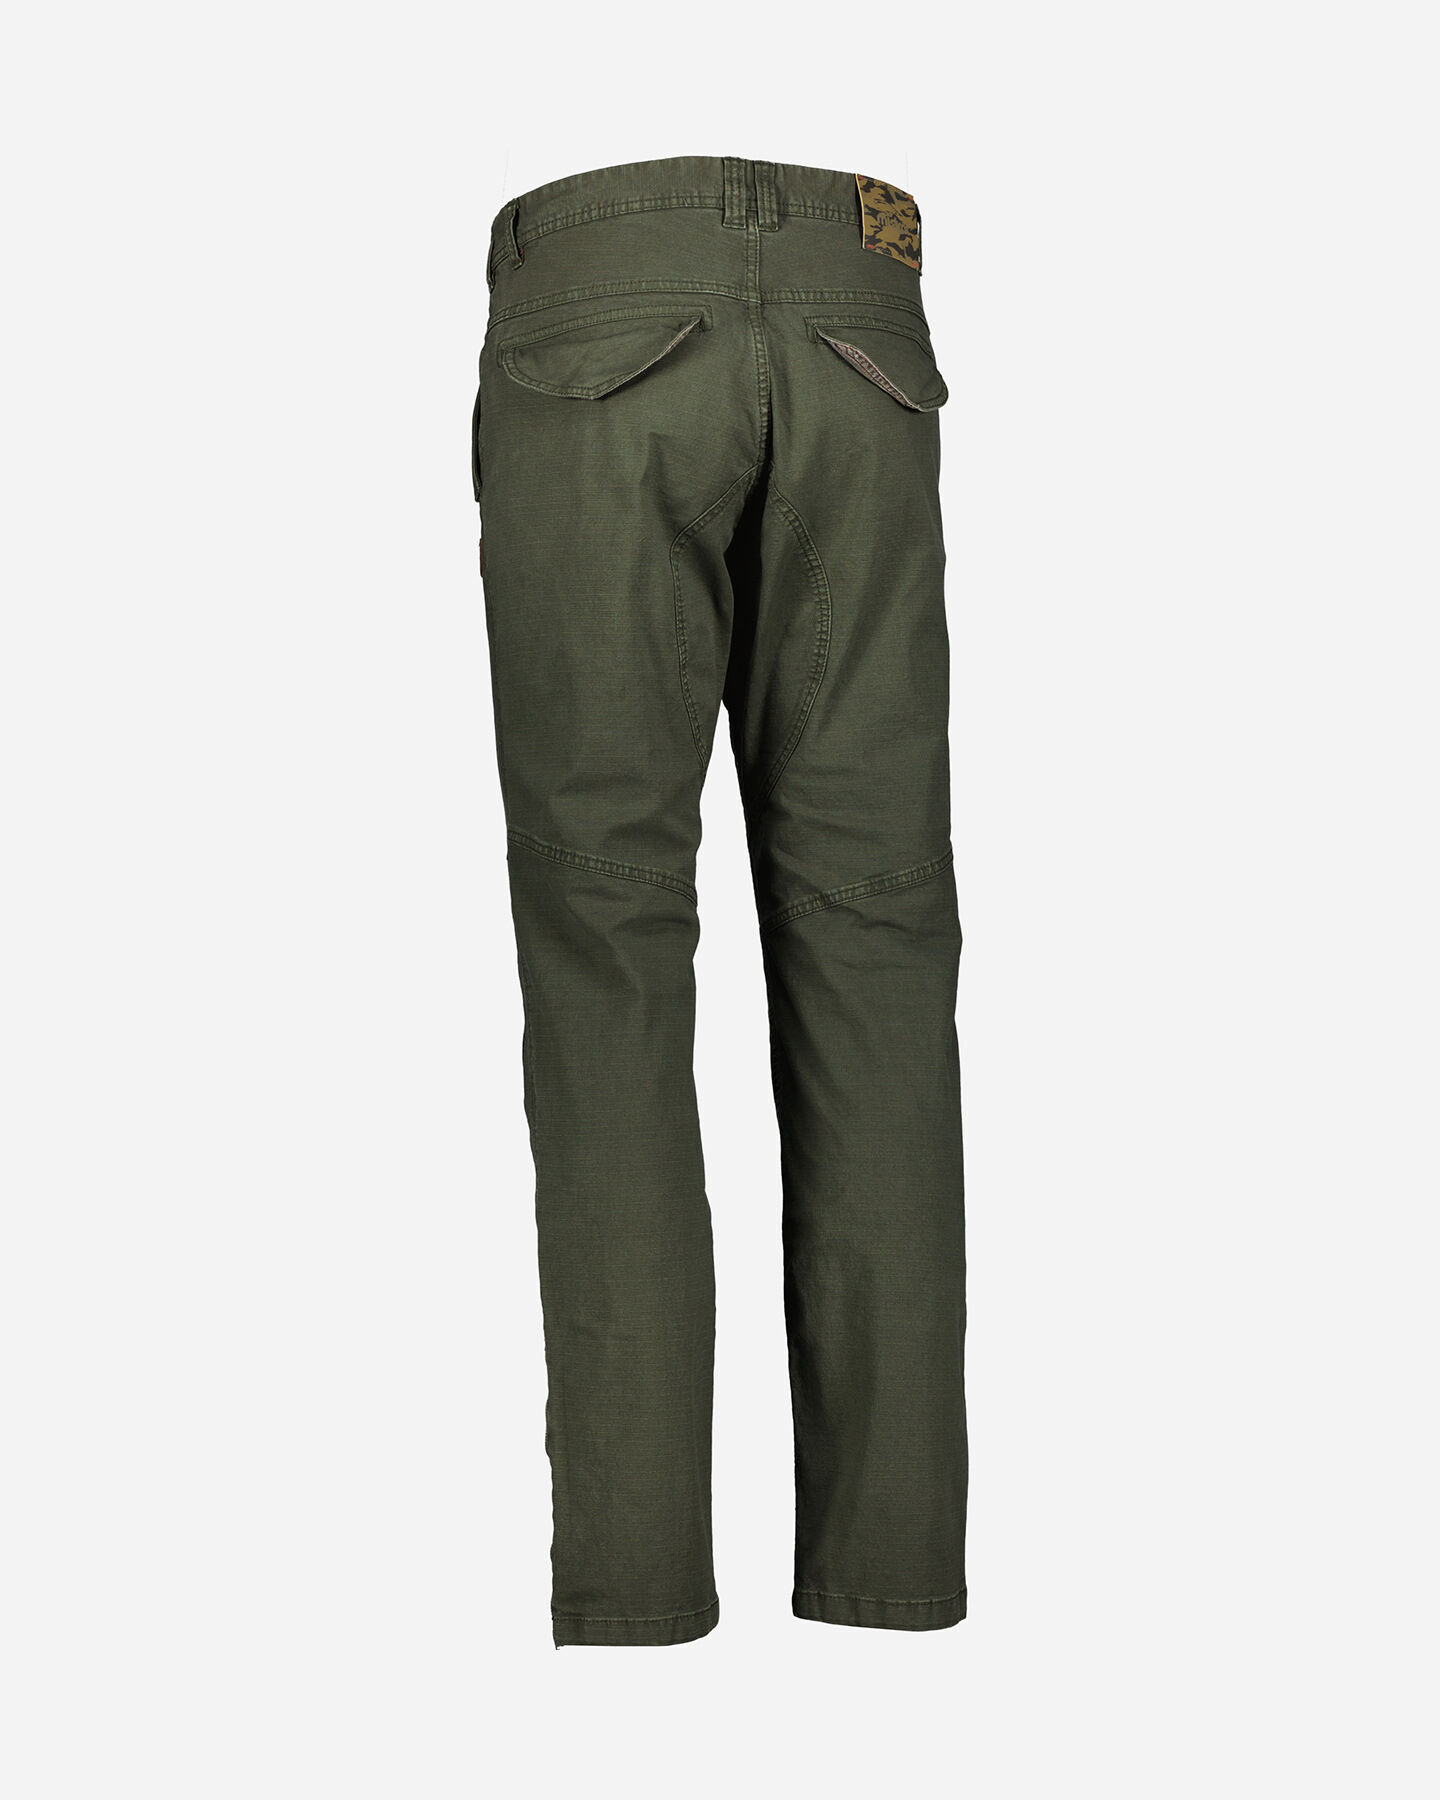  Pantalone MISTRAL CHINO M S4094059|786|44 scatto 5